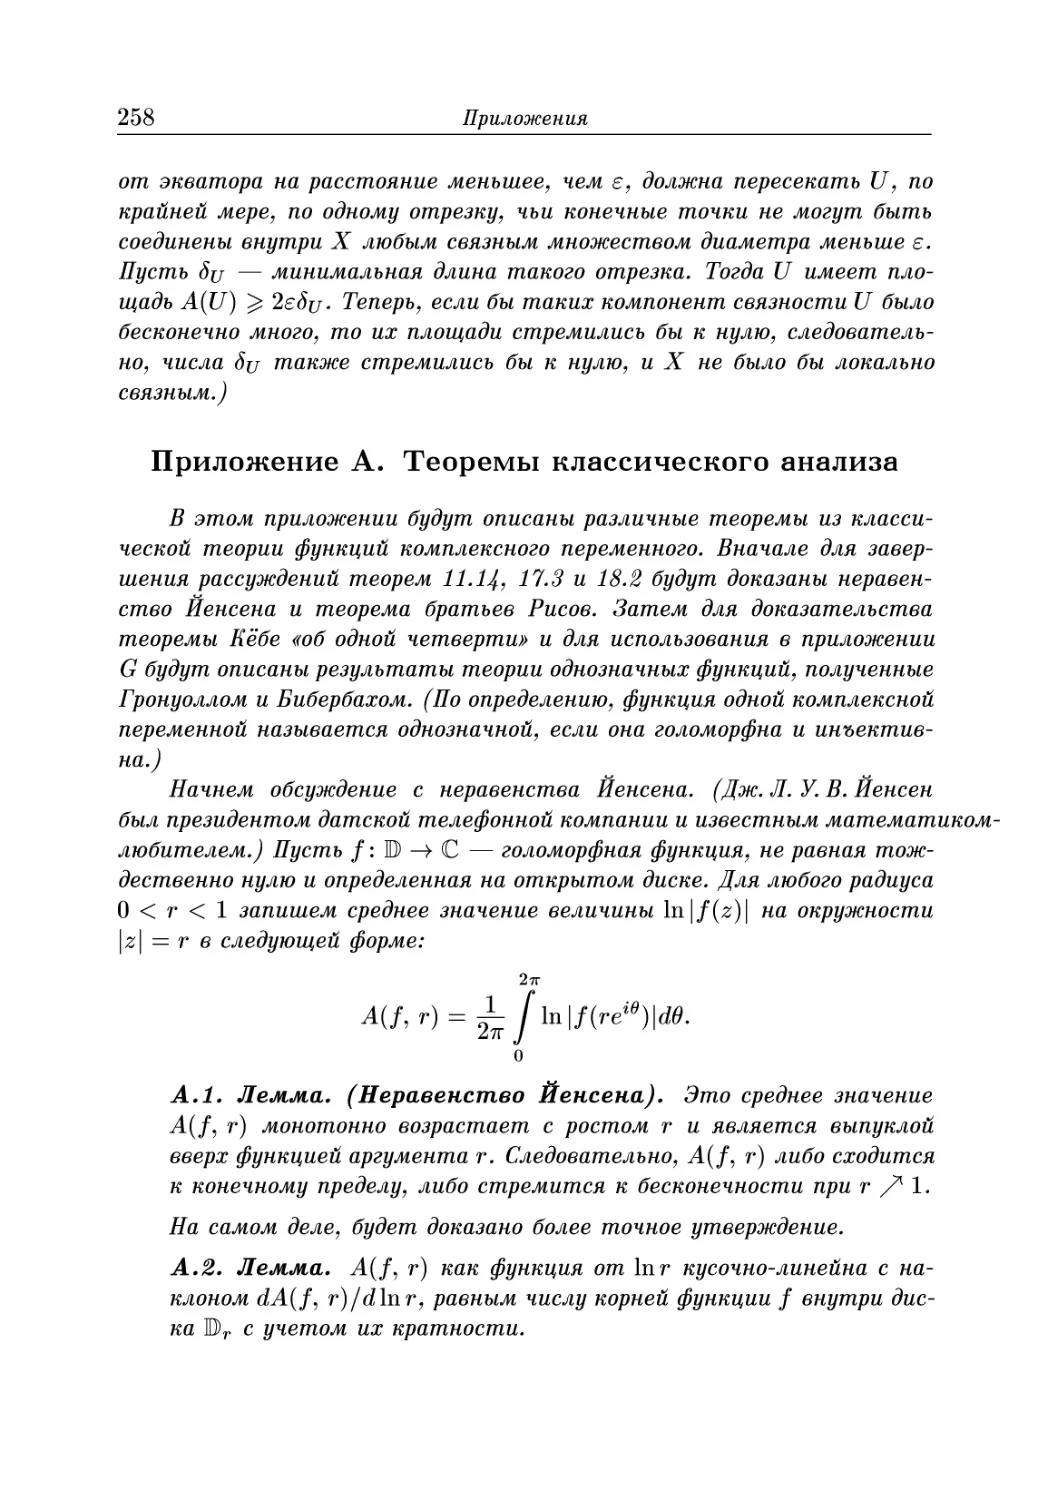 Приложение A. Теоремы классического анализа